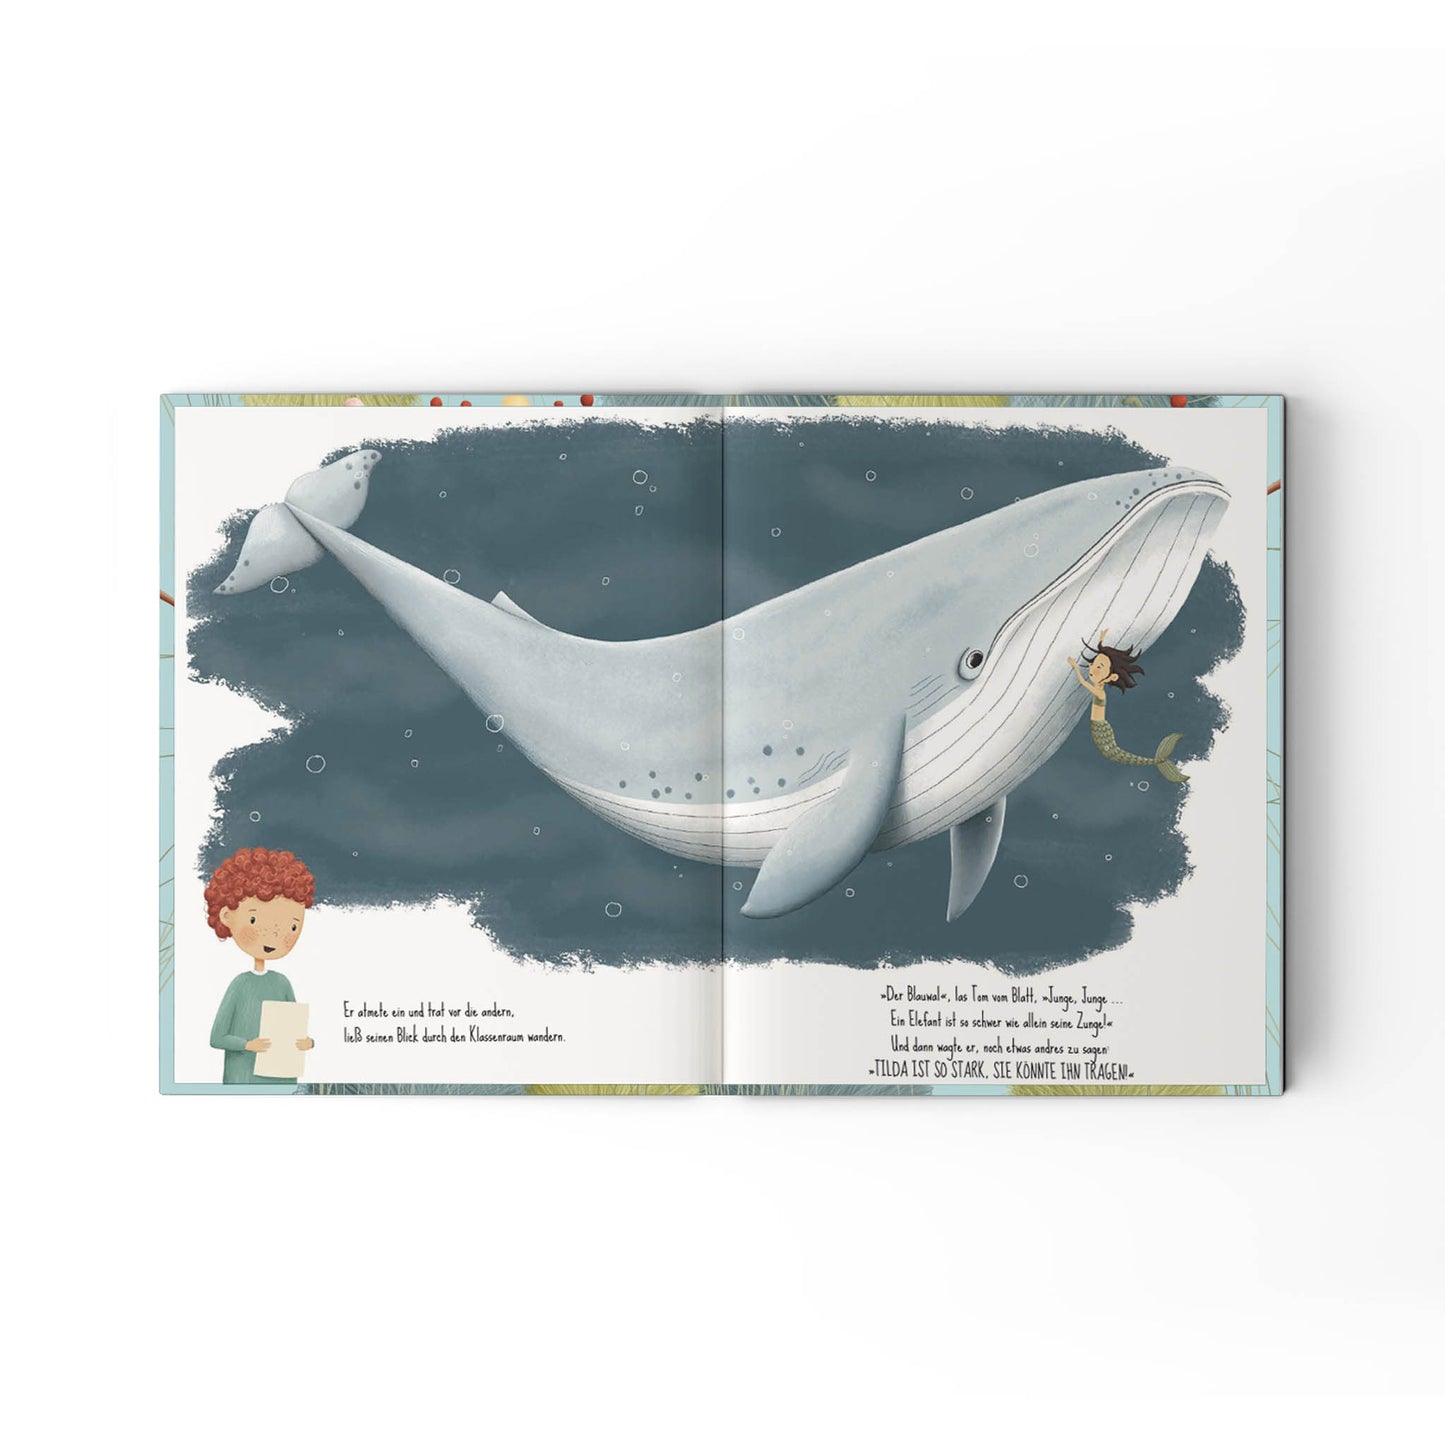 Jupitermond Verlag - Kinderbuch "Das wunderbarste Wesen der Welt" - Leja Concept Store